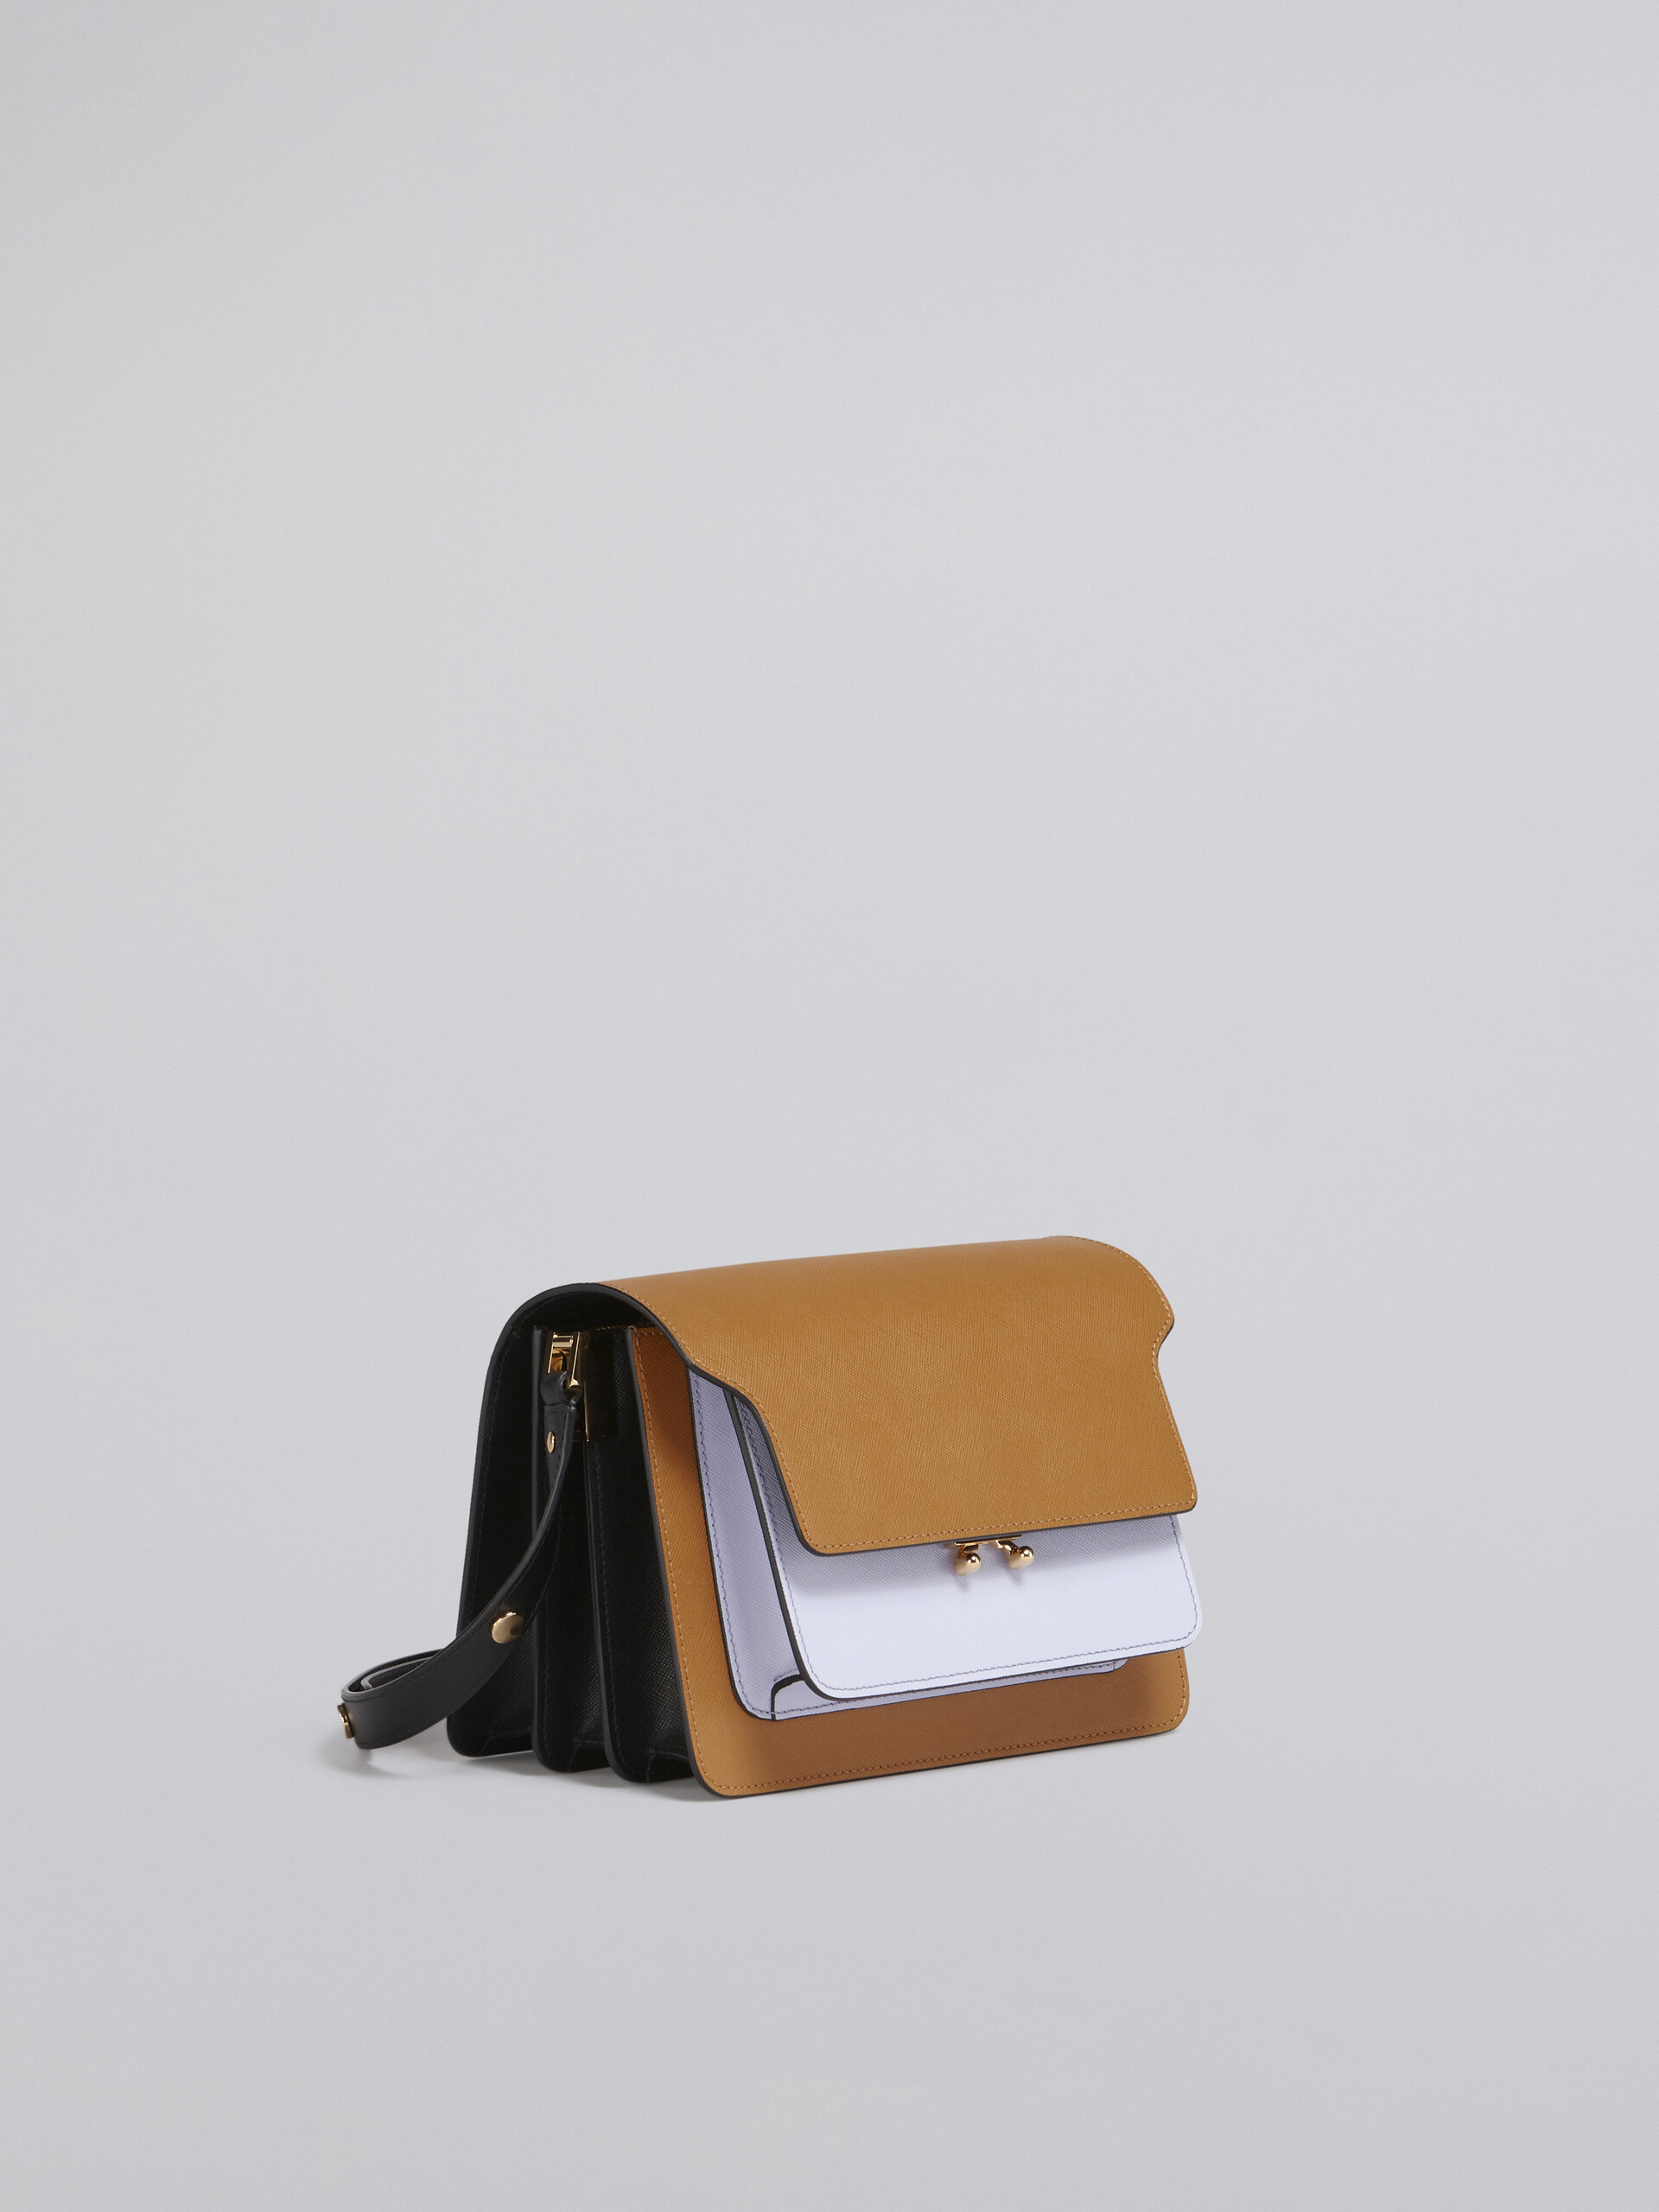 Bolso TRUNK de piel saffiano marrón, lila y negra - Bolsos de hombro - Image 6